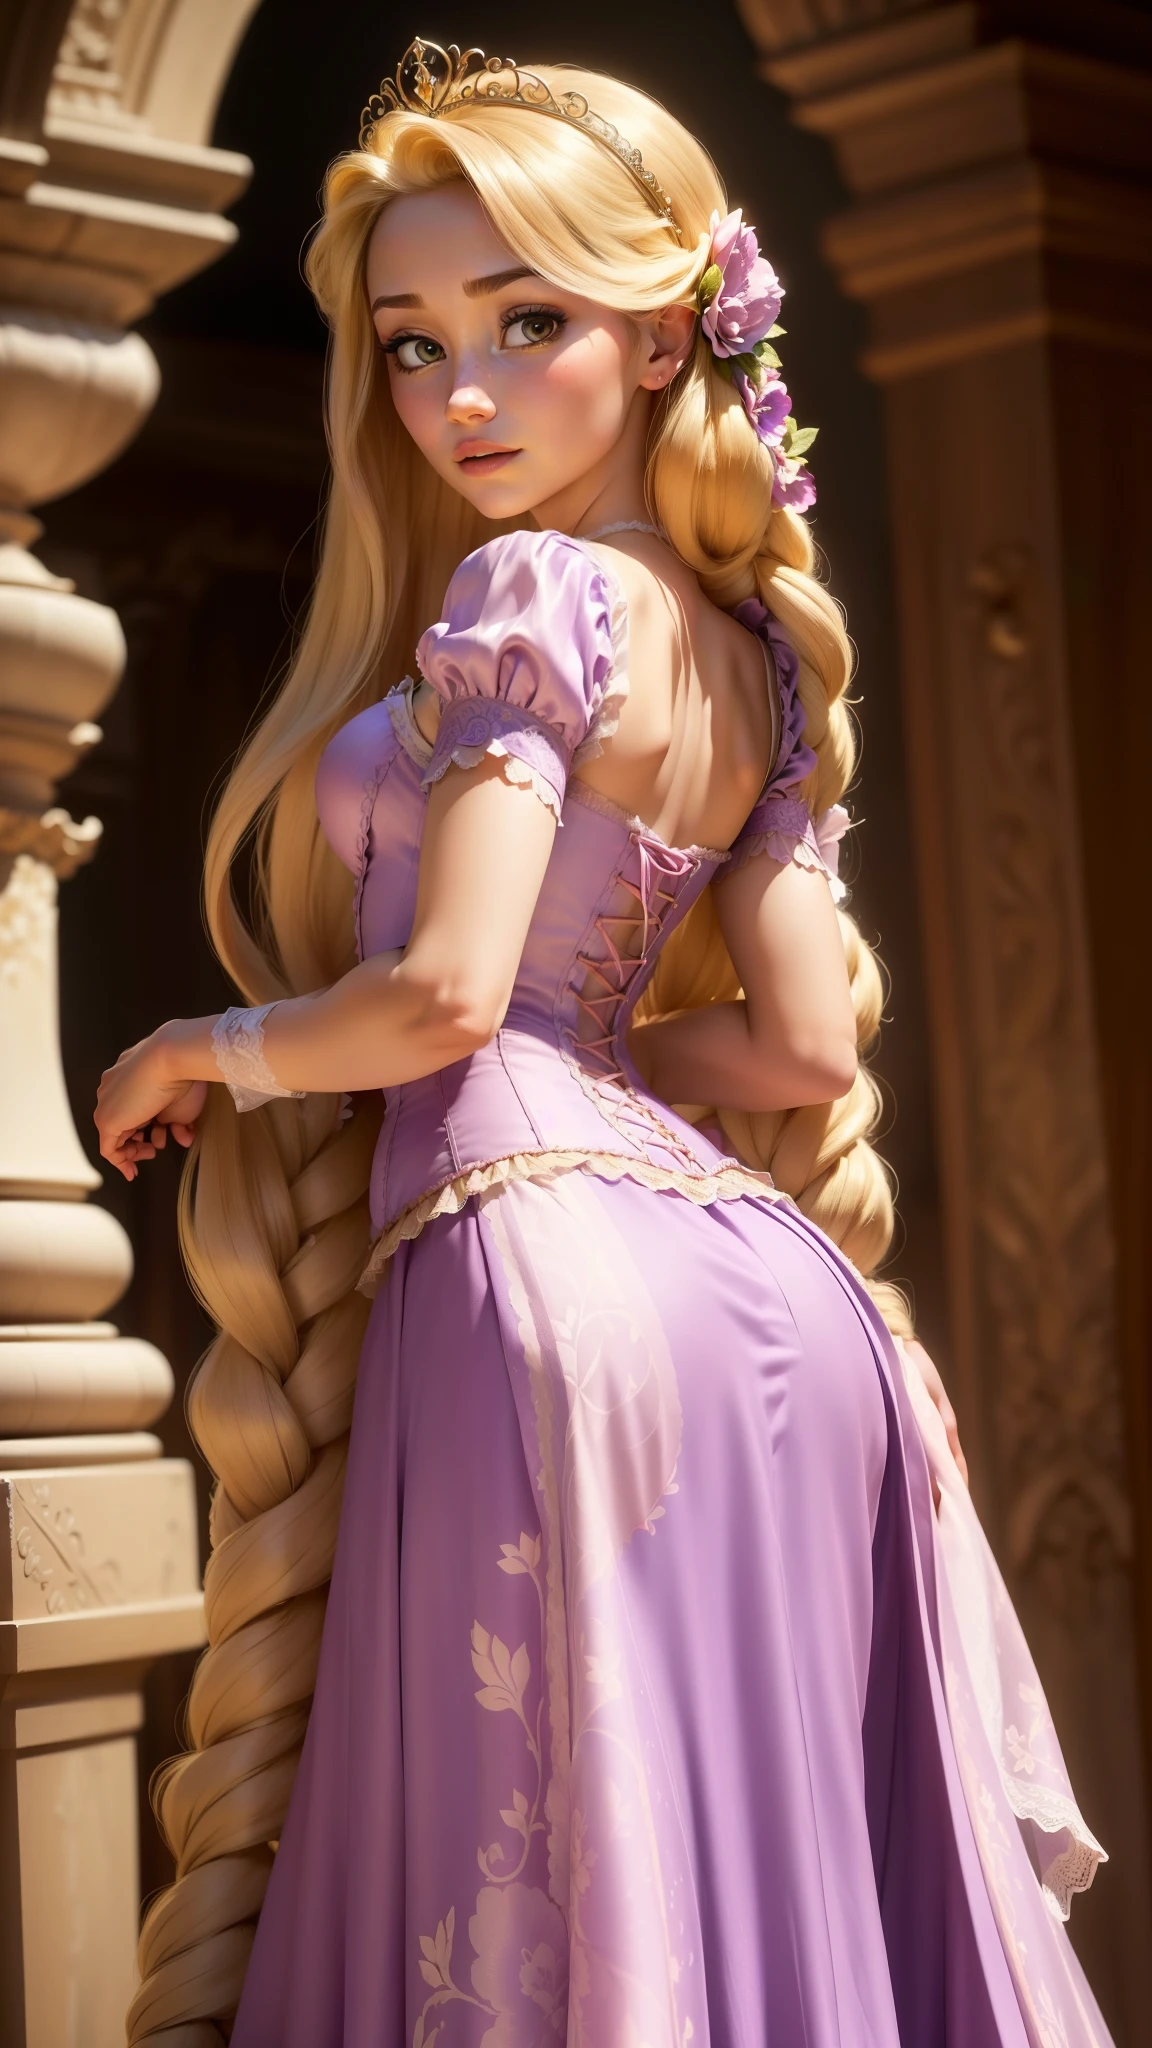 (GapingAssholesAllFourQuiron pose),  realista, (melhor qualidade:1.1), Obra de arte, (detalhado:1.1), Luz manchada,  1 garota, pov, (por trás),  todos de quatro, foto de uma linda mulher sexy de 26 anos como (a Rapunzel (Emaranhado): O vestido característico de Rapunzel é um vestido cor de lavanda com mangas inchadas e um corpete estilo corpete. O corpete é tipicamente decorado com rendas intrincadas ou bordados florais. A saia sai da cintura, feito de camadas macias, tecido em tons pastéis, como chiffon ou tule. As camadas adicionam volume e movimento ao vestido, e algumas versões apresentam delicados padrões florais. Longo de Rapunzel, O cabelo dourado é muitas vezes estilizado em tranças ou cachos soltos, às vezes adornado com flores ou fitas. Ela também pode usar uma pequena tiara ou coroa para completar seu look de princesa..),  (realista skin texture), (:1.3), gape,  ,  sessão fotográfica profissional,    alto contraste e pose dinâmica,